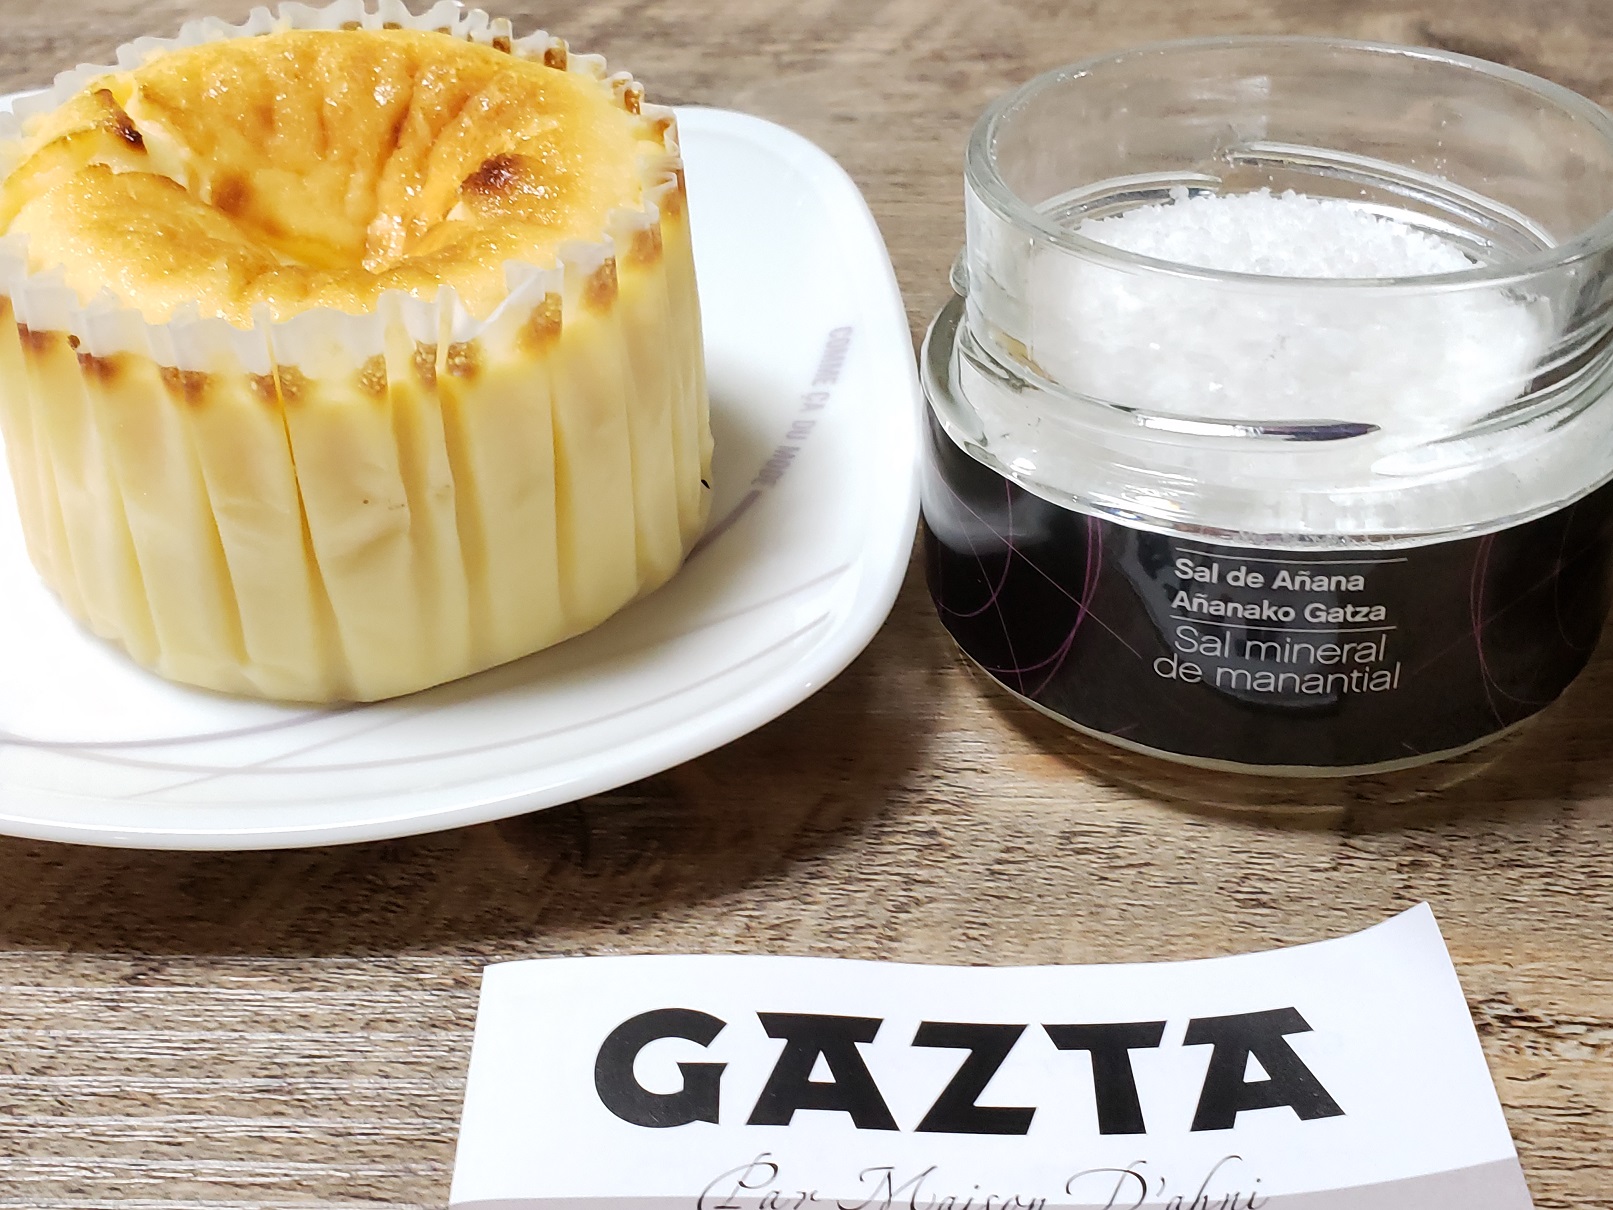 白金高輪gazta スペイン バスクの本物チーズケーキ アニャーナ岩塩でいただきました 大人おいしく 本場バルの味ですね エキストラヴァージンオリーブオイルのコンディメント メディテラネオ